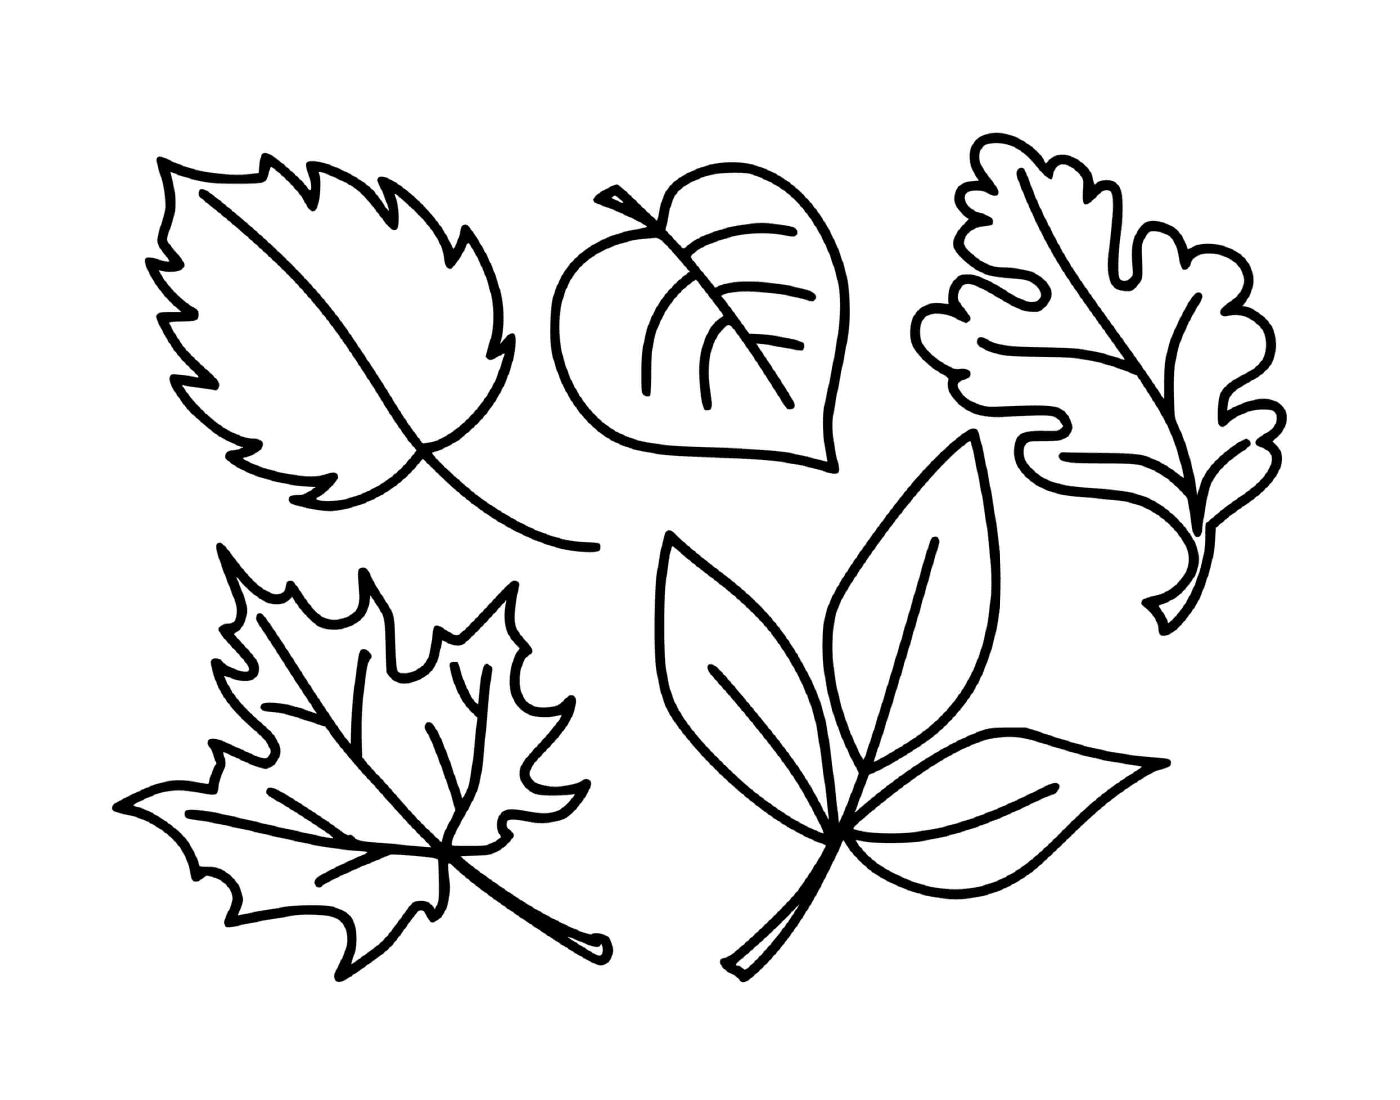  Varias caricaturas de la temporada de otoño 